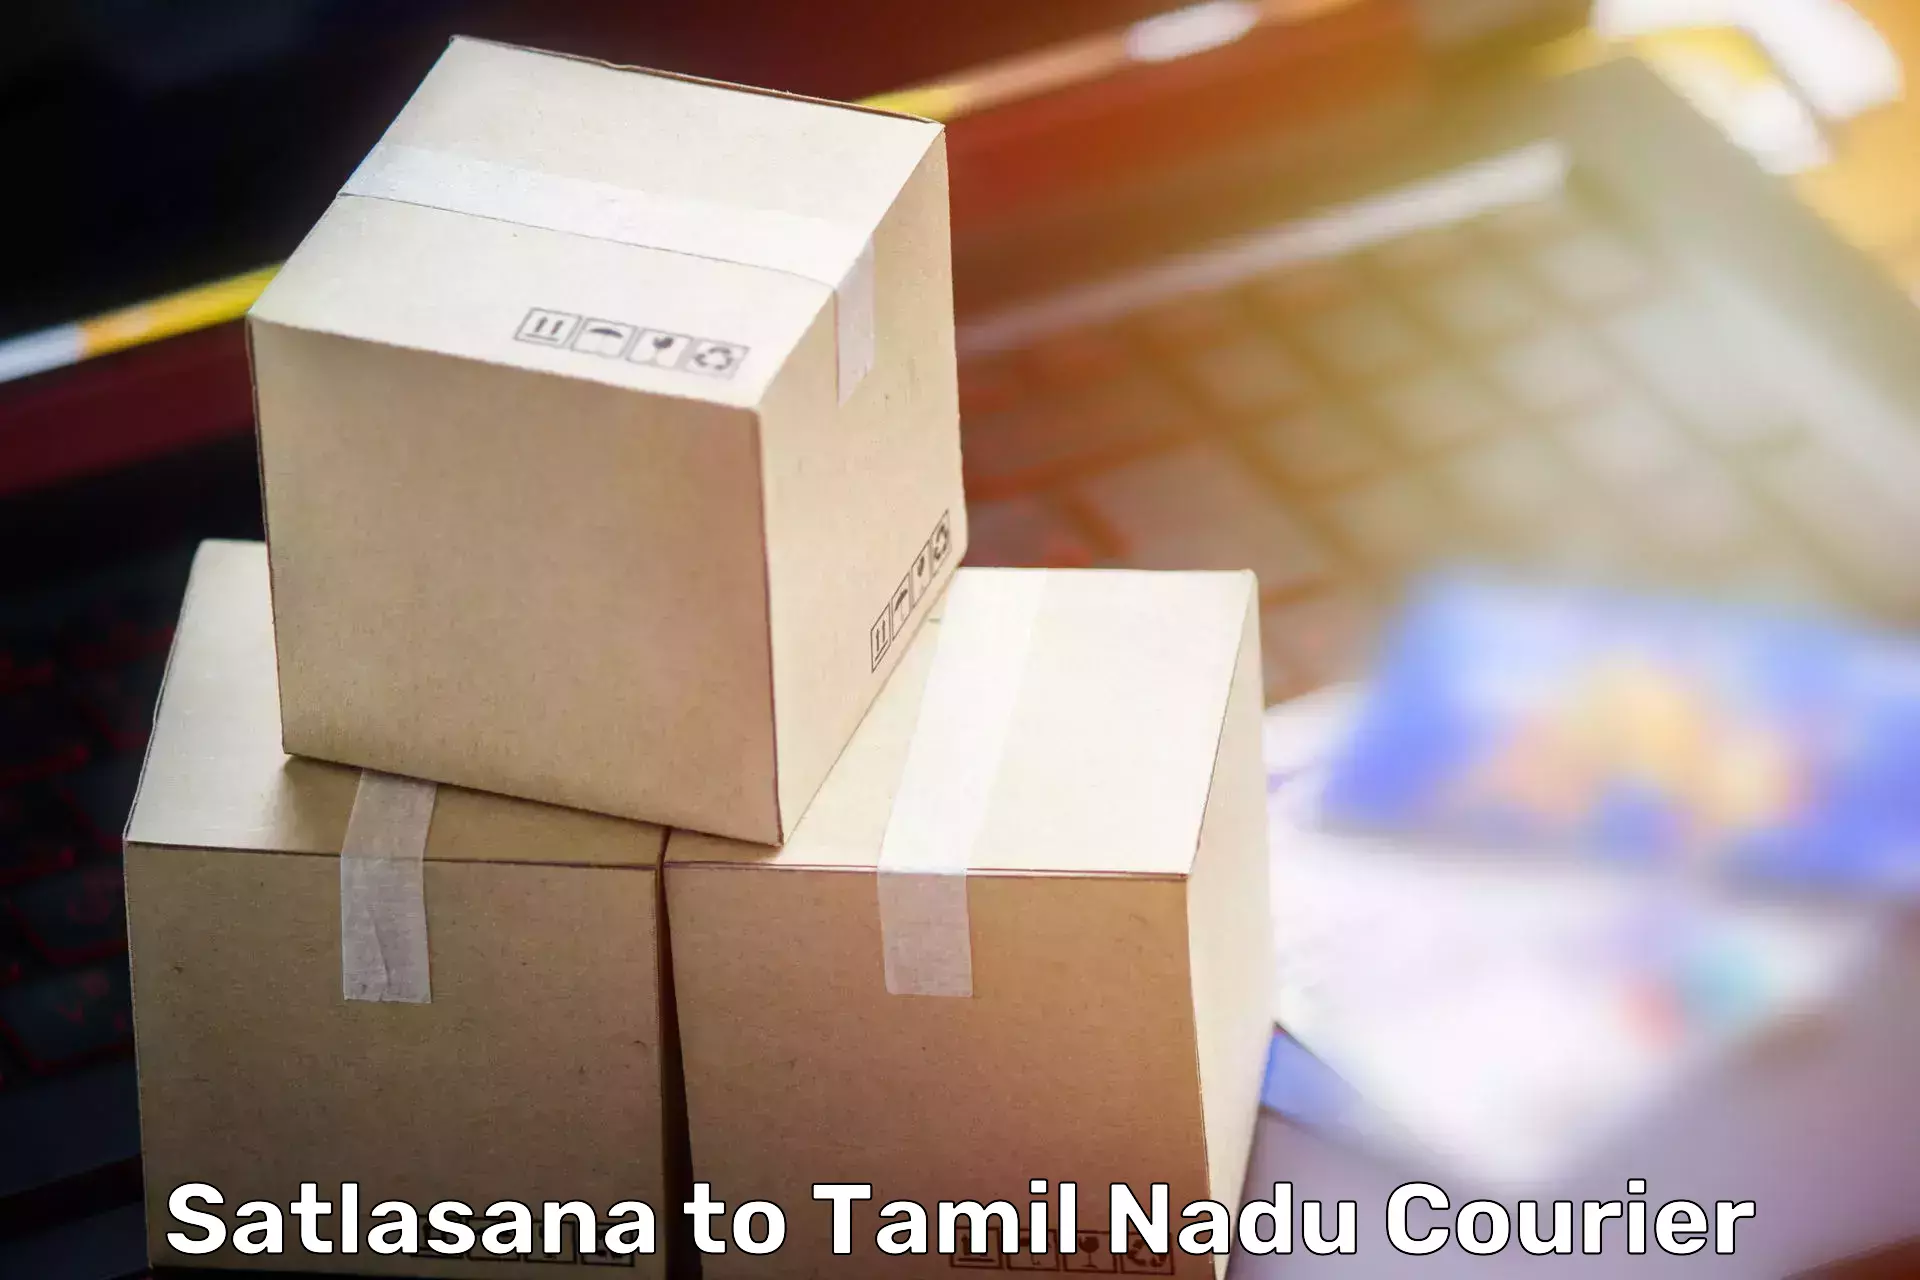 Moving and handling services Satlasana to Papanasam